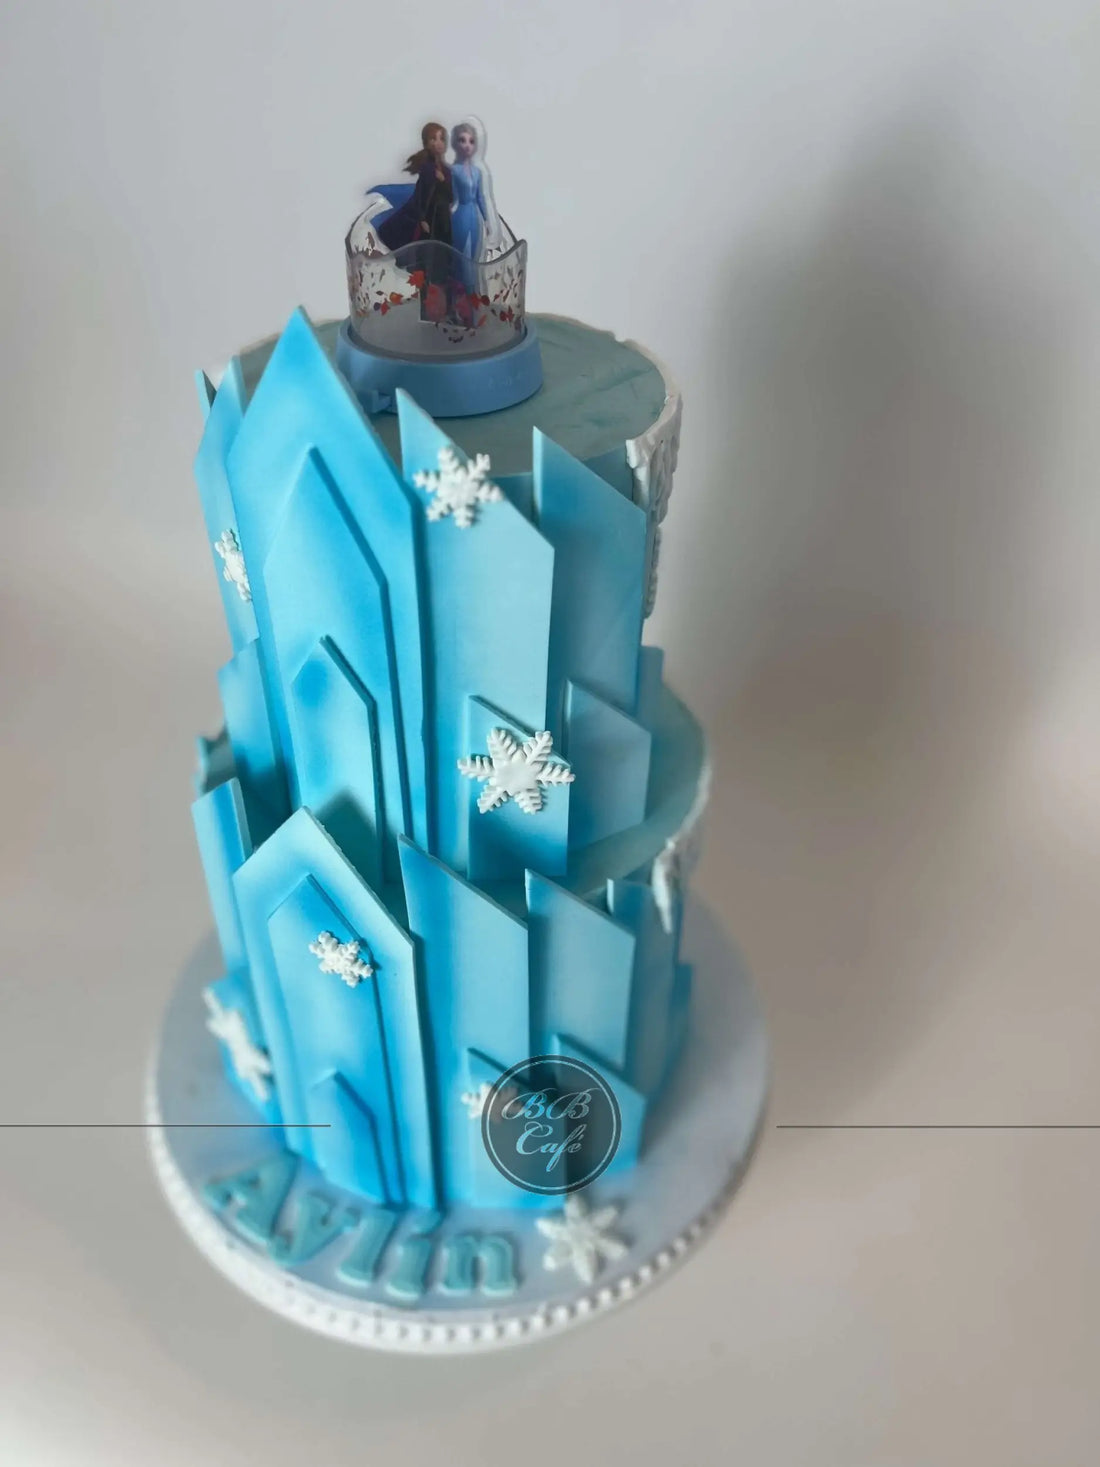 Frozen cartoon - arnedelle castle in fondant custom cake